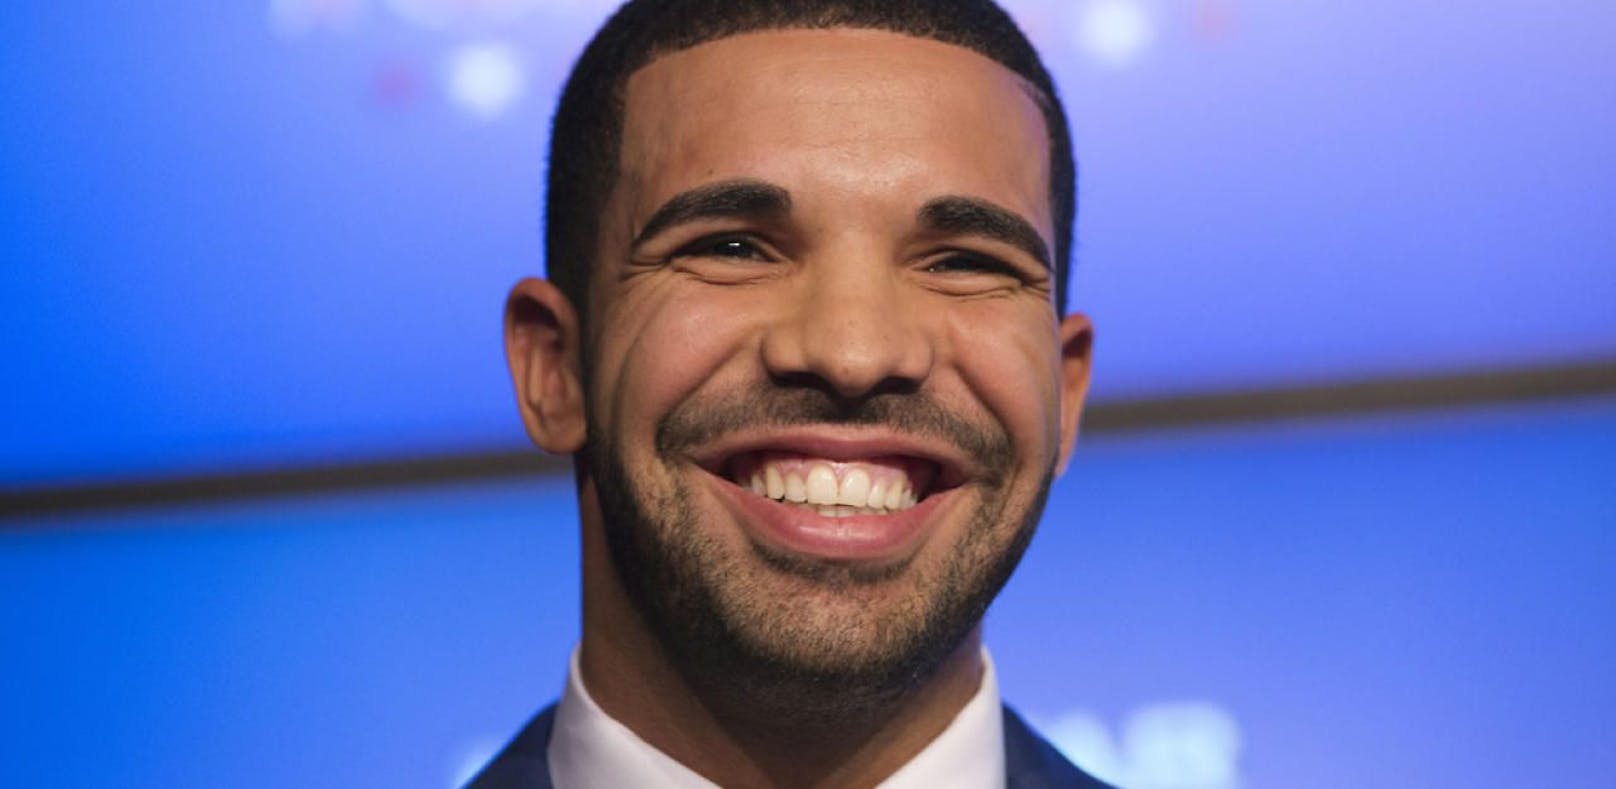 Drake steht auf "Scorpion" zu unehelichem Sohn